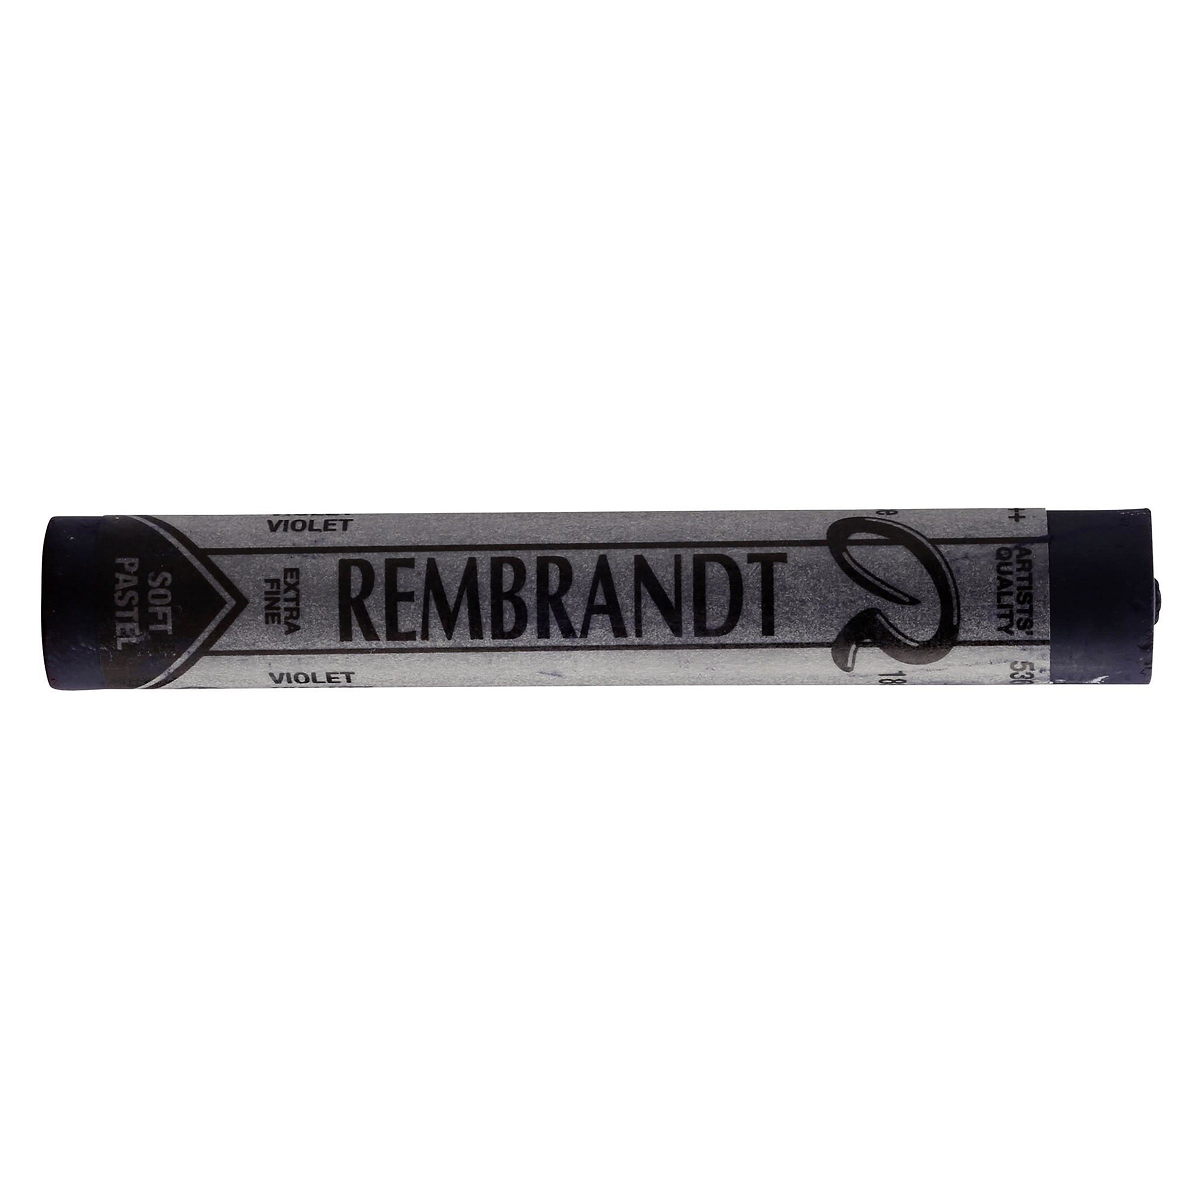 Rembrandt Soft Pastel - Violet 536.2